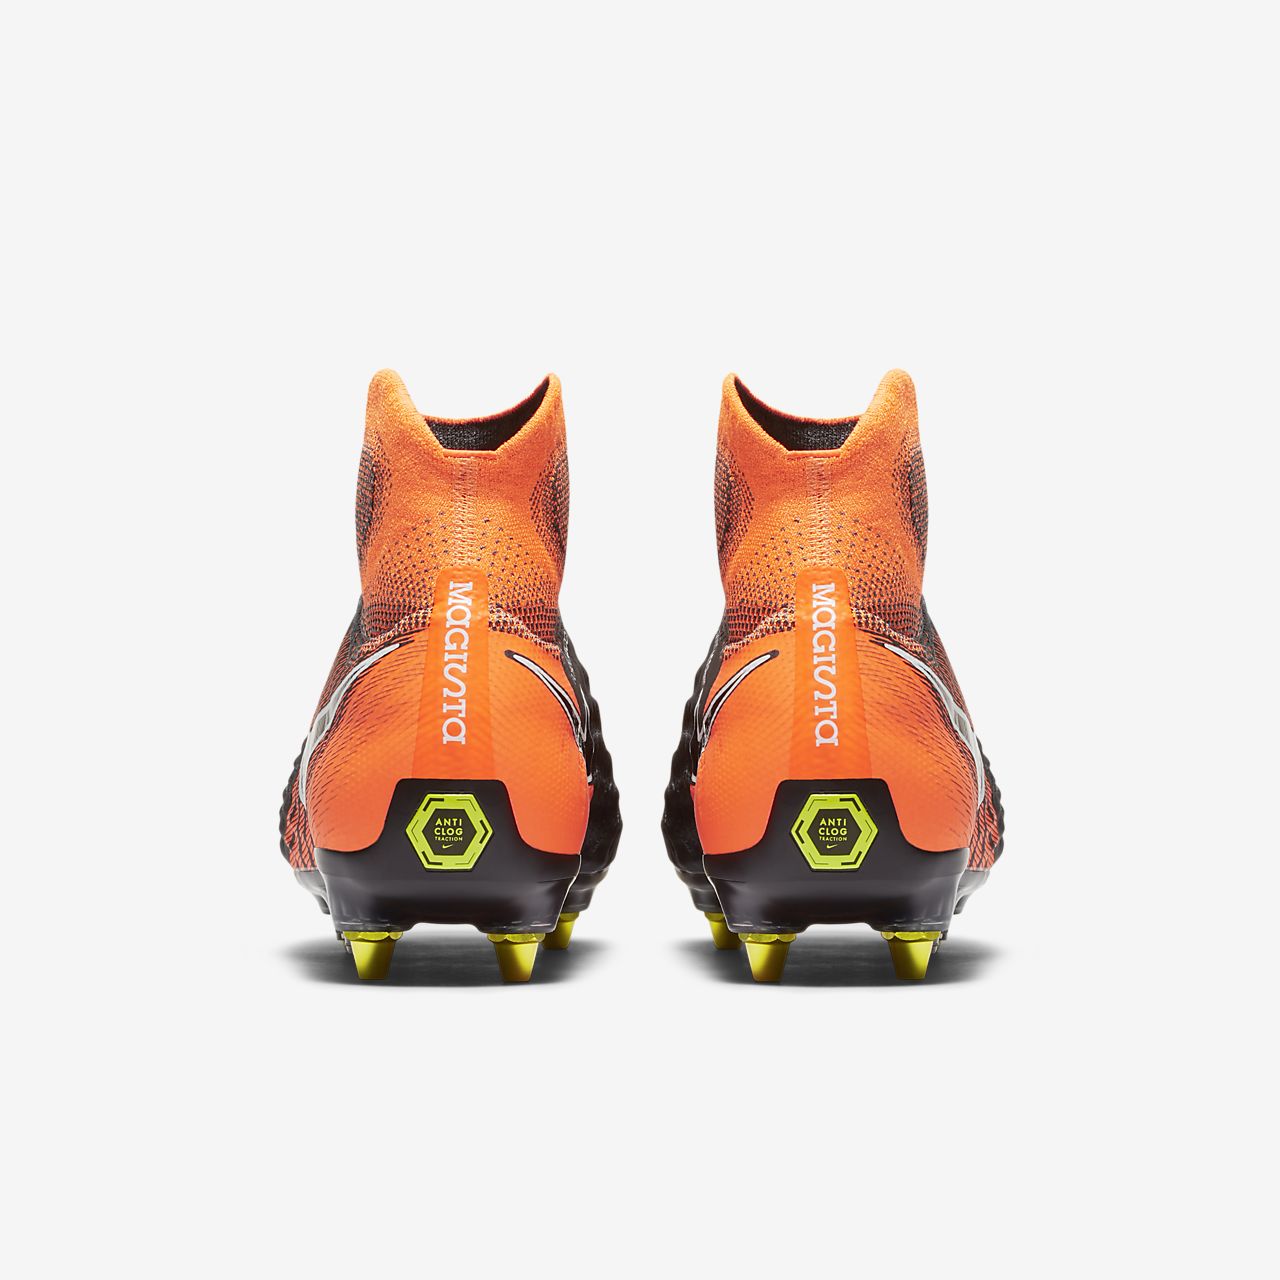 Nike Magista Orden II SG Football Boots, ￡75.00